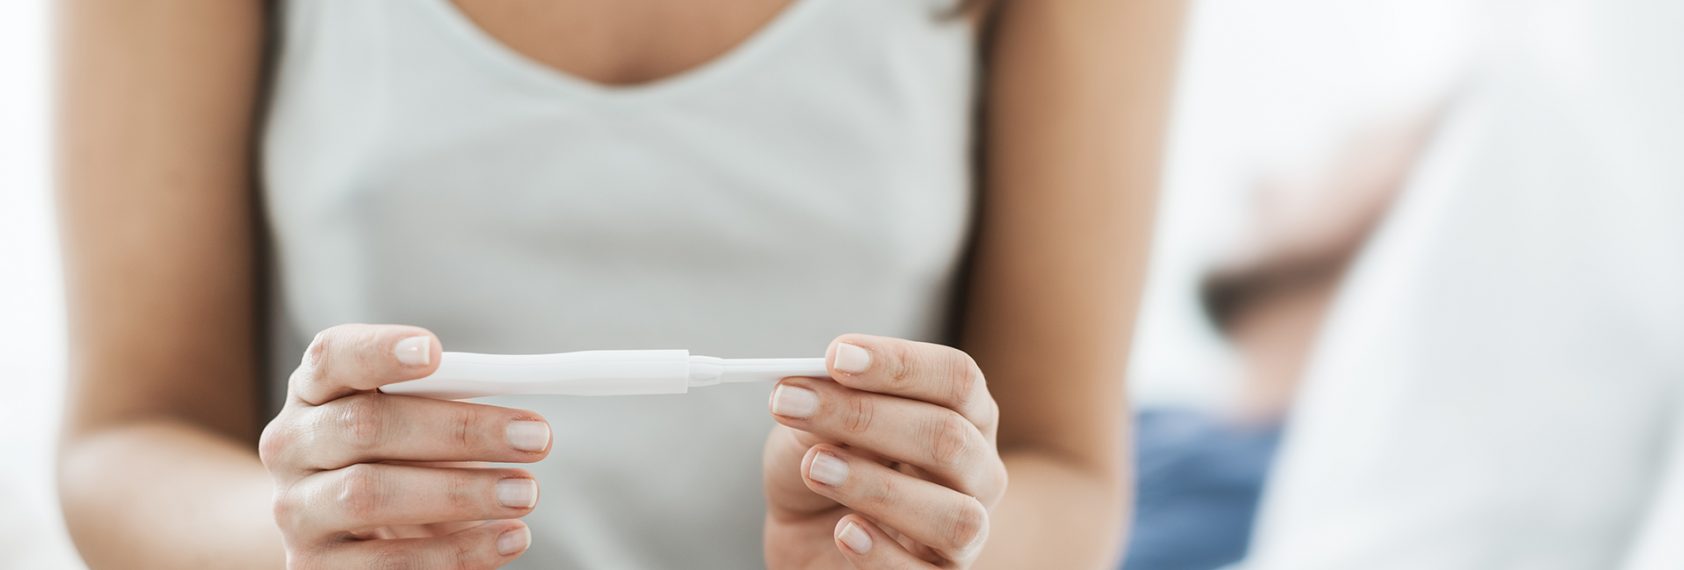 fertilys clinique fertilite comprendre infertilite causes test de grossesse